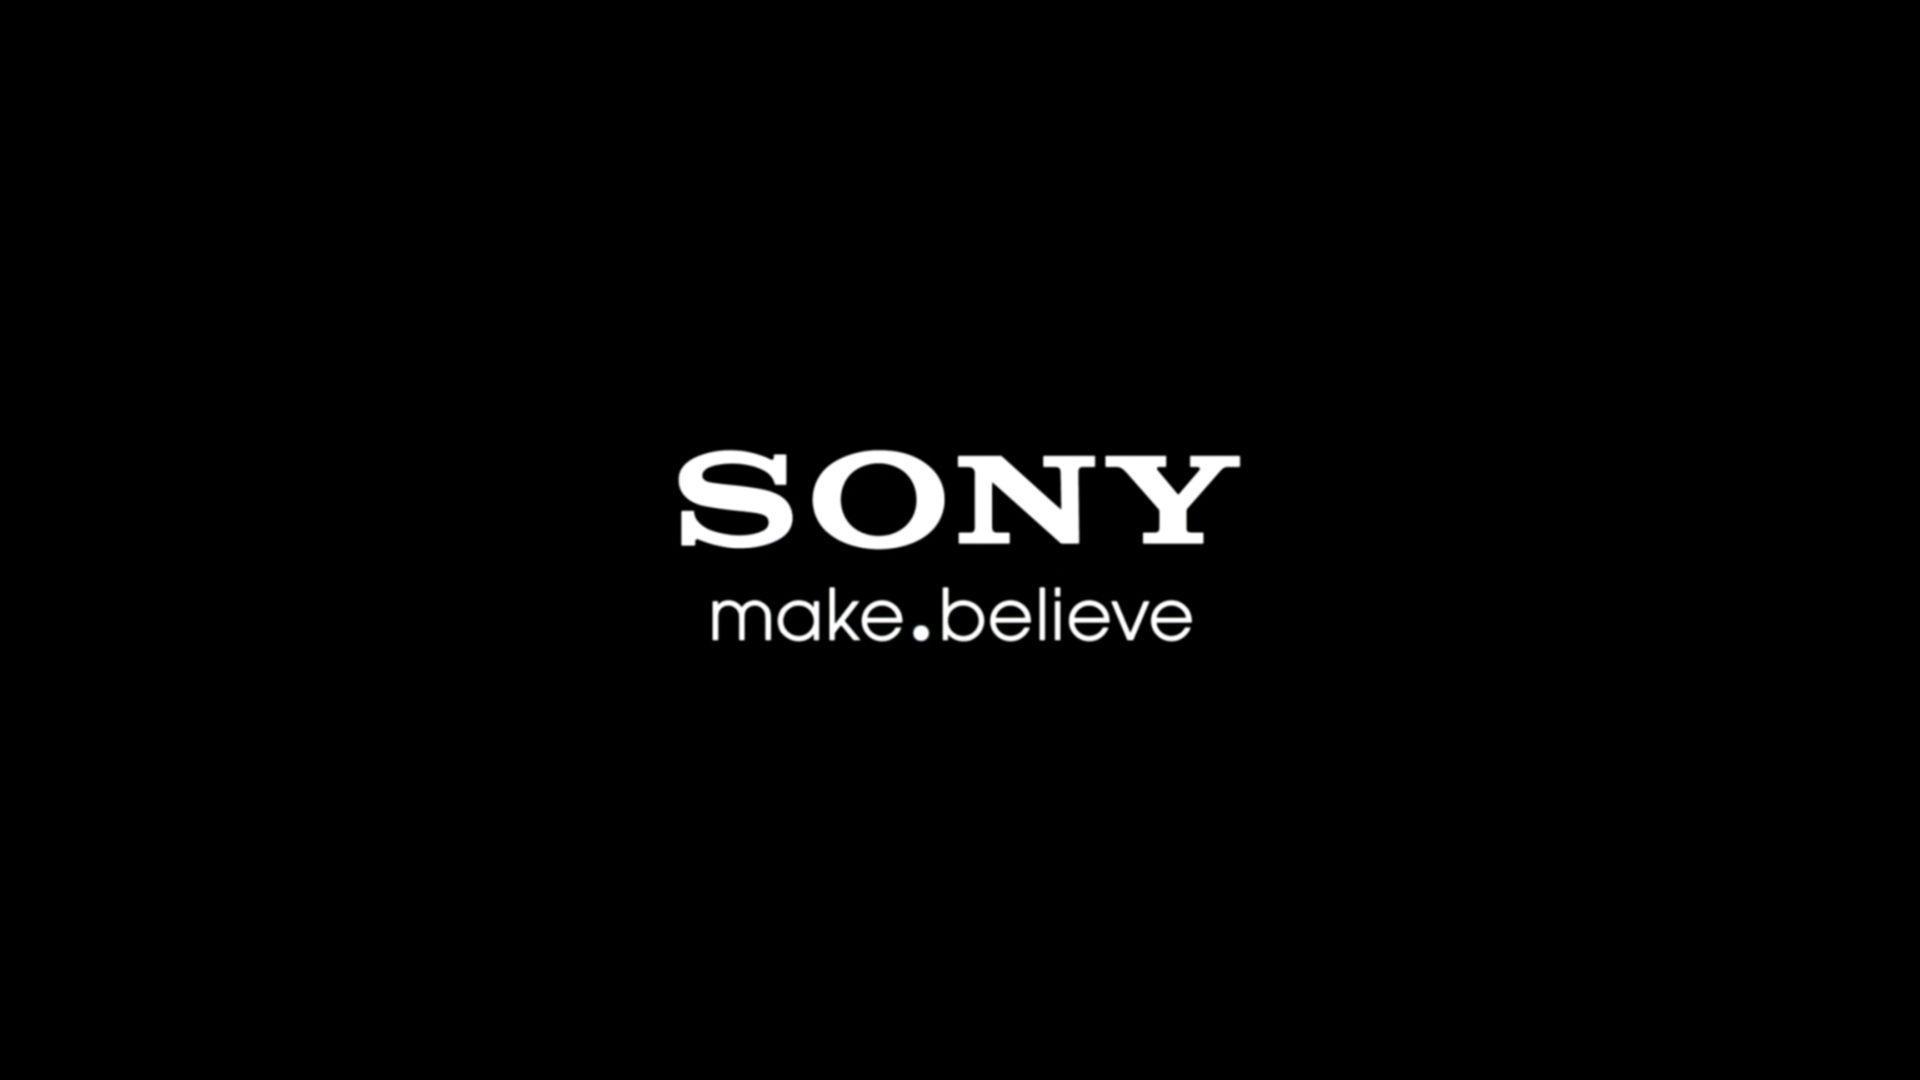 Sony 4K Logo Wallpaper Free Sony 4K Logo Background